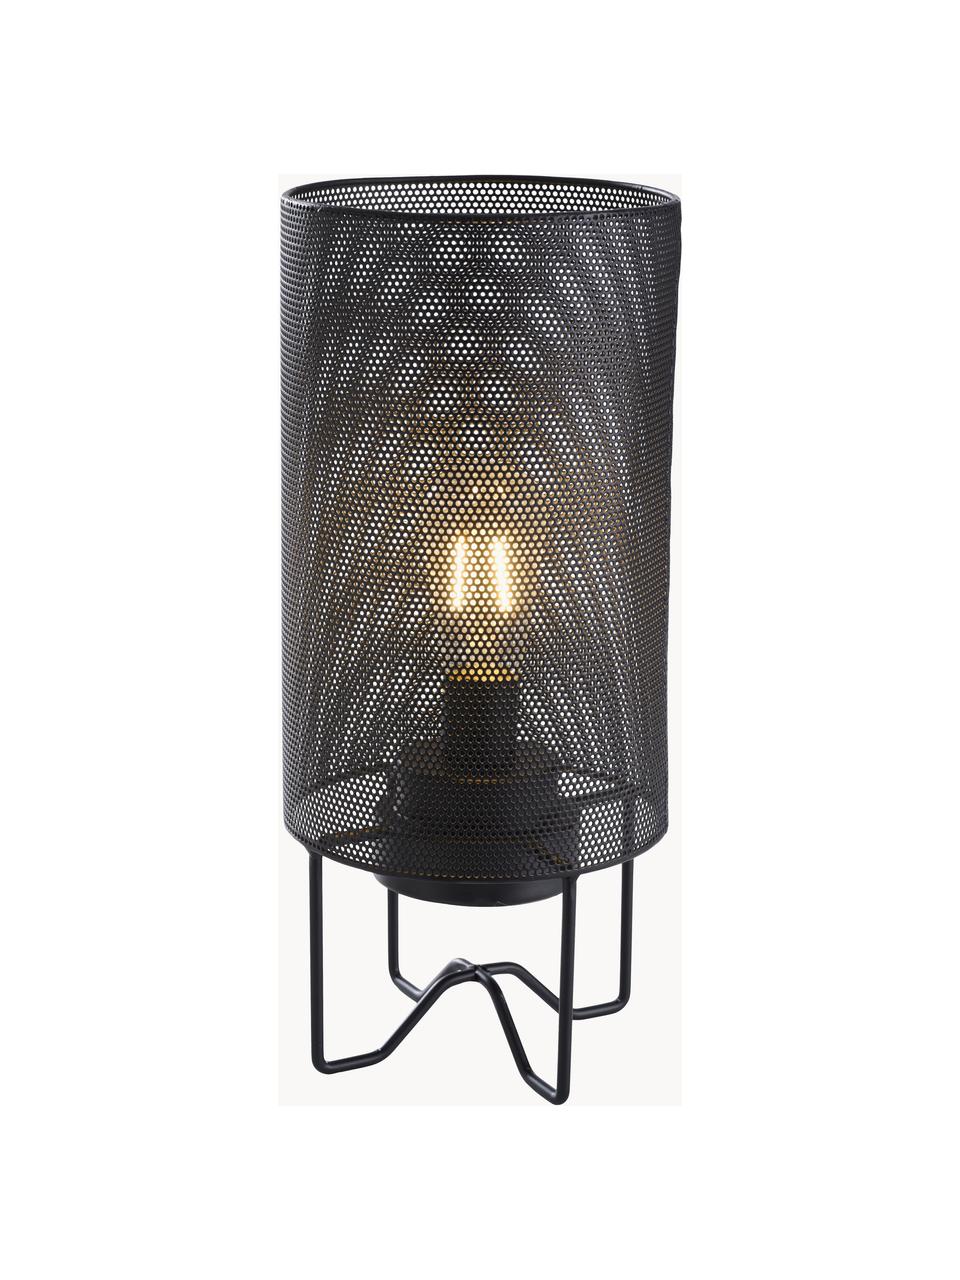 Lampe d'extérieur LED mobile Evening, Plastique, métal, enduit, Noir, Ø 15 x haut. 33 cm